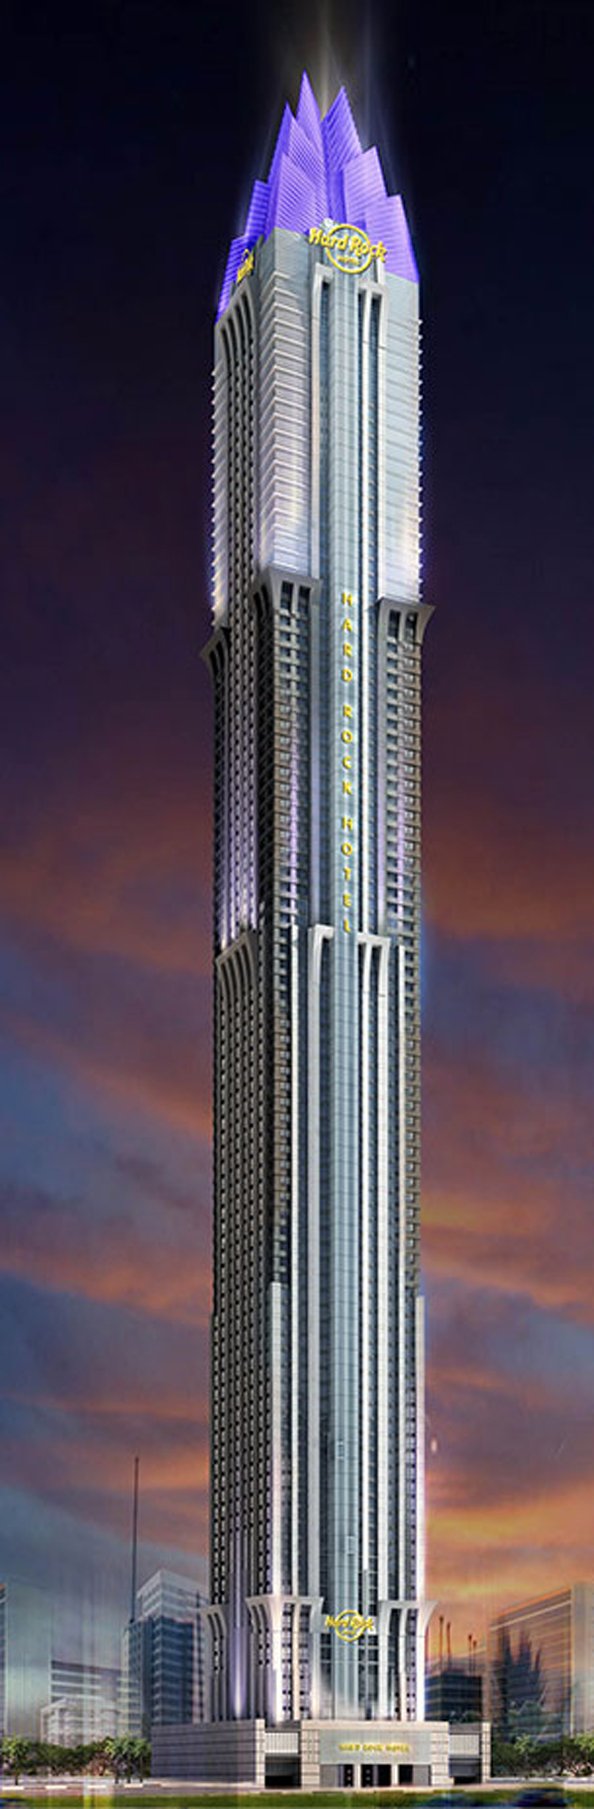 The new Marina 101 tower will house the Hard Rock Cafe in Dubai Marina